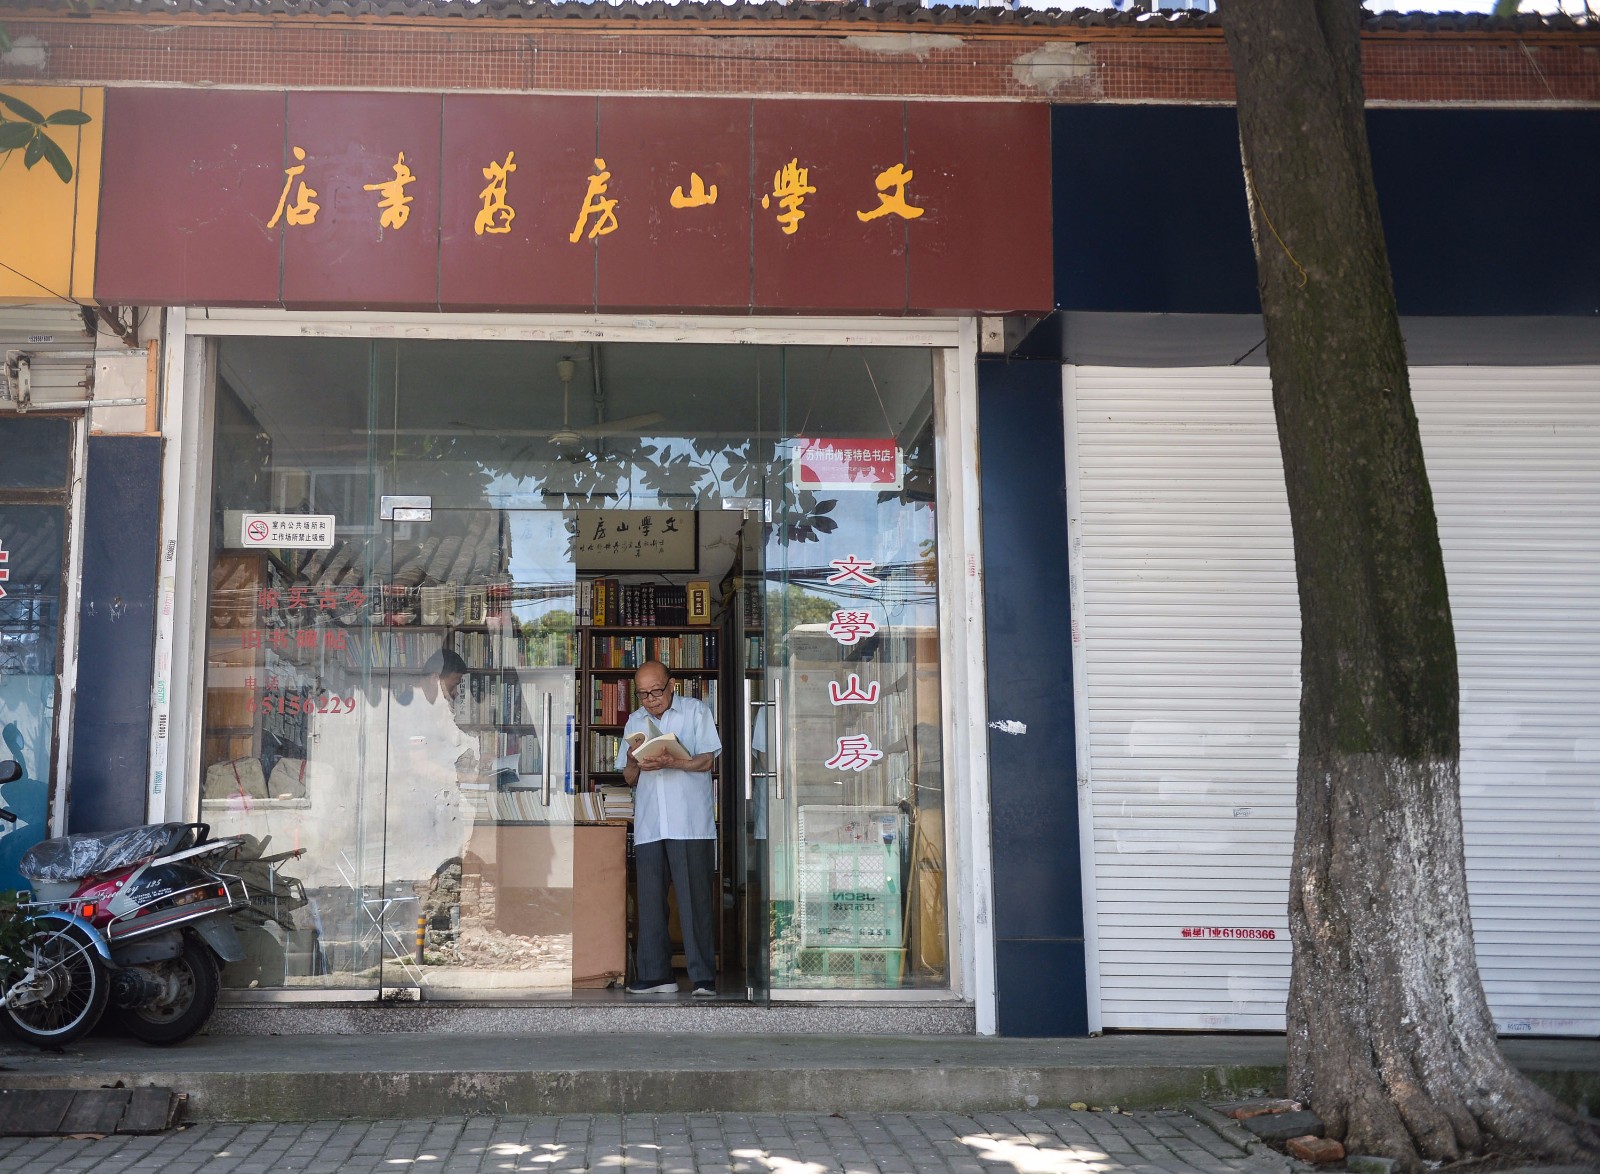   7月18日，江澄波老人在“文学山房”旧书店内忙碌。 